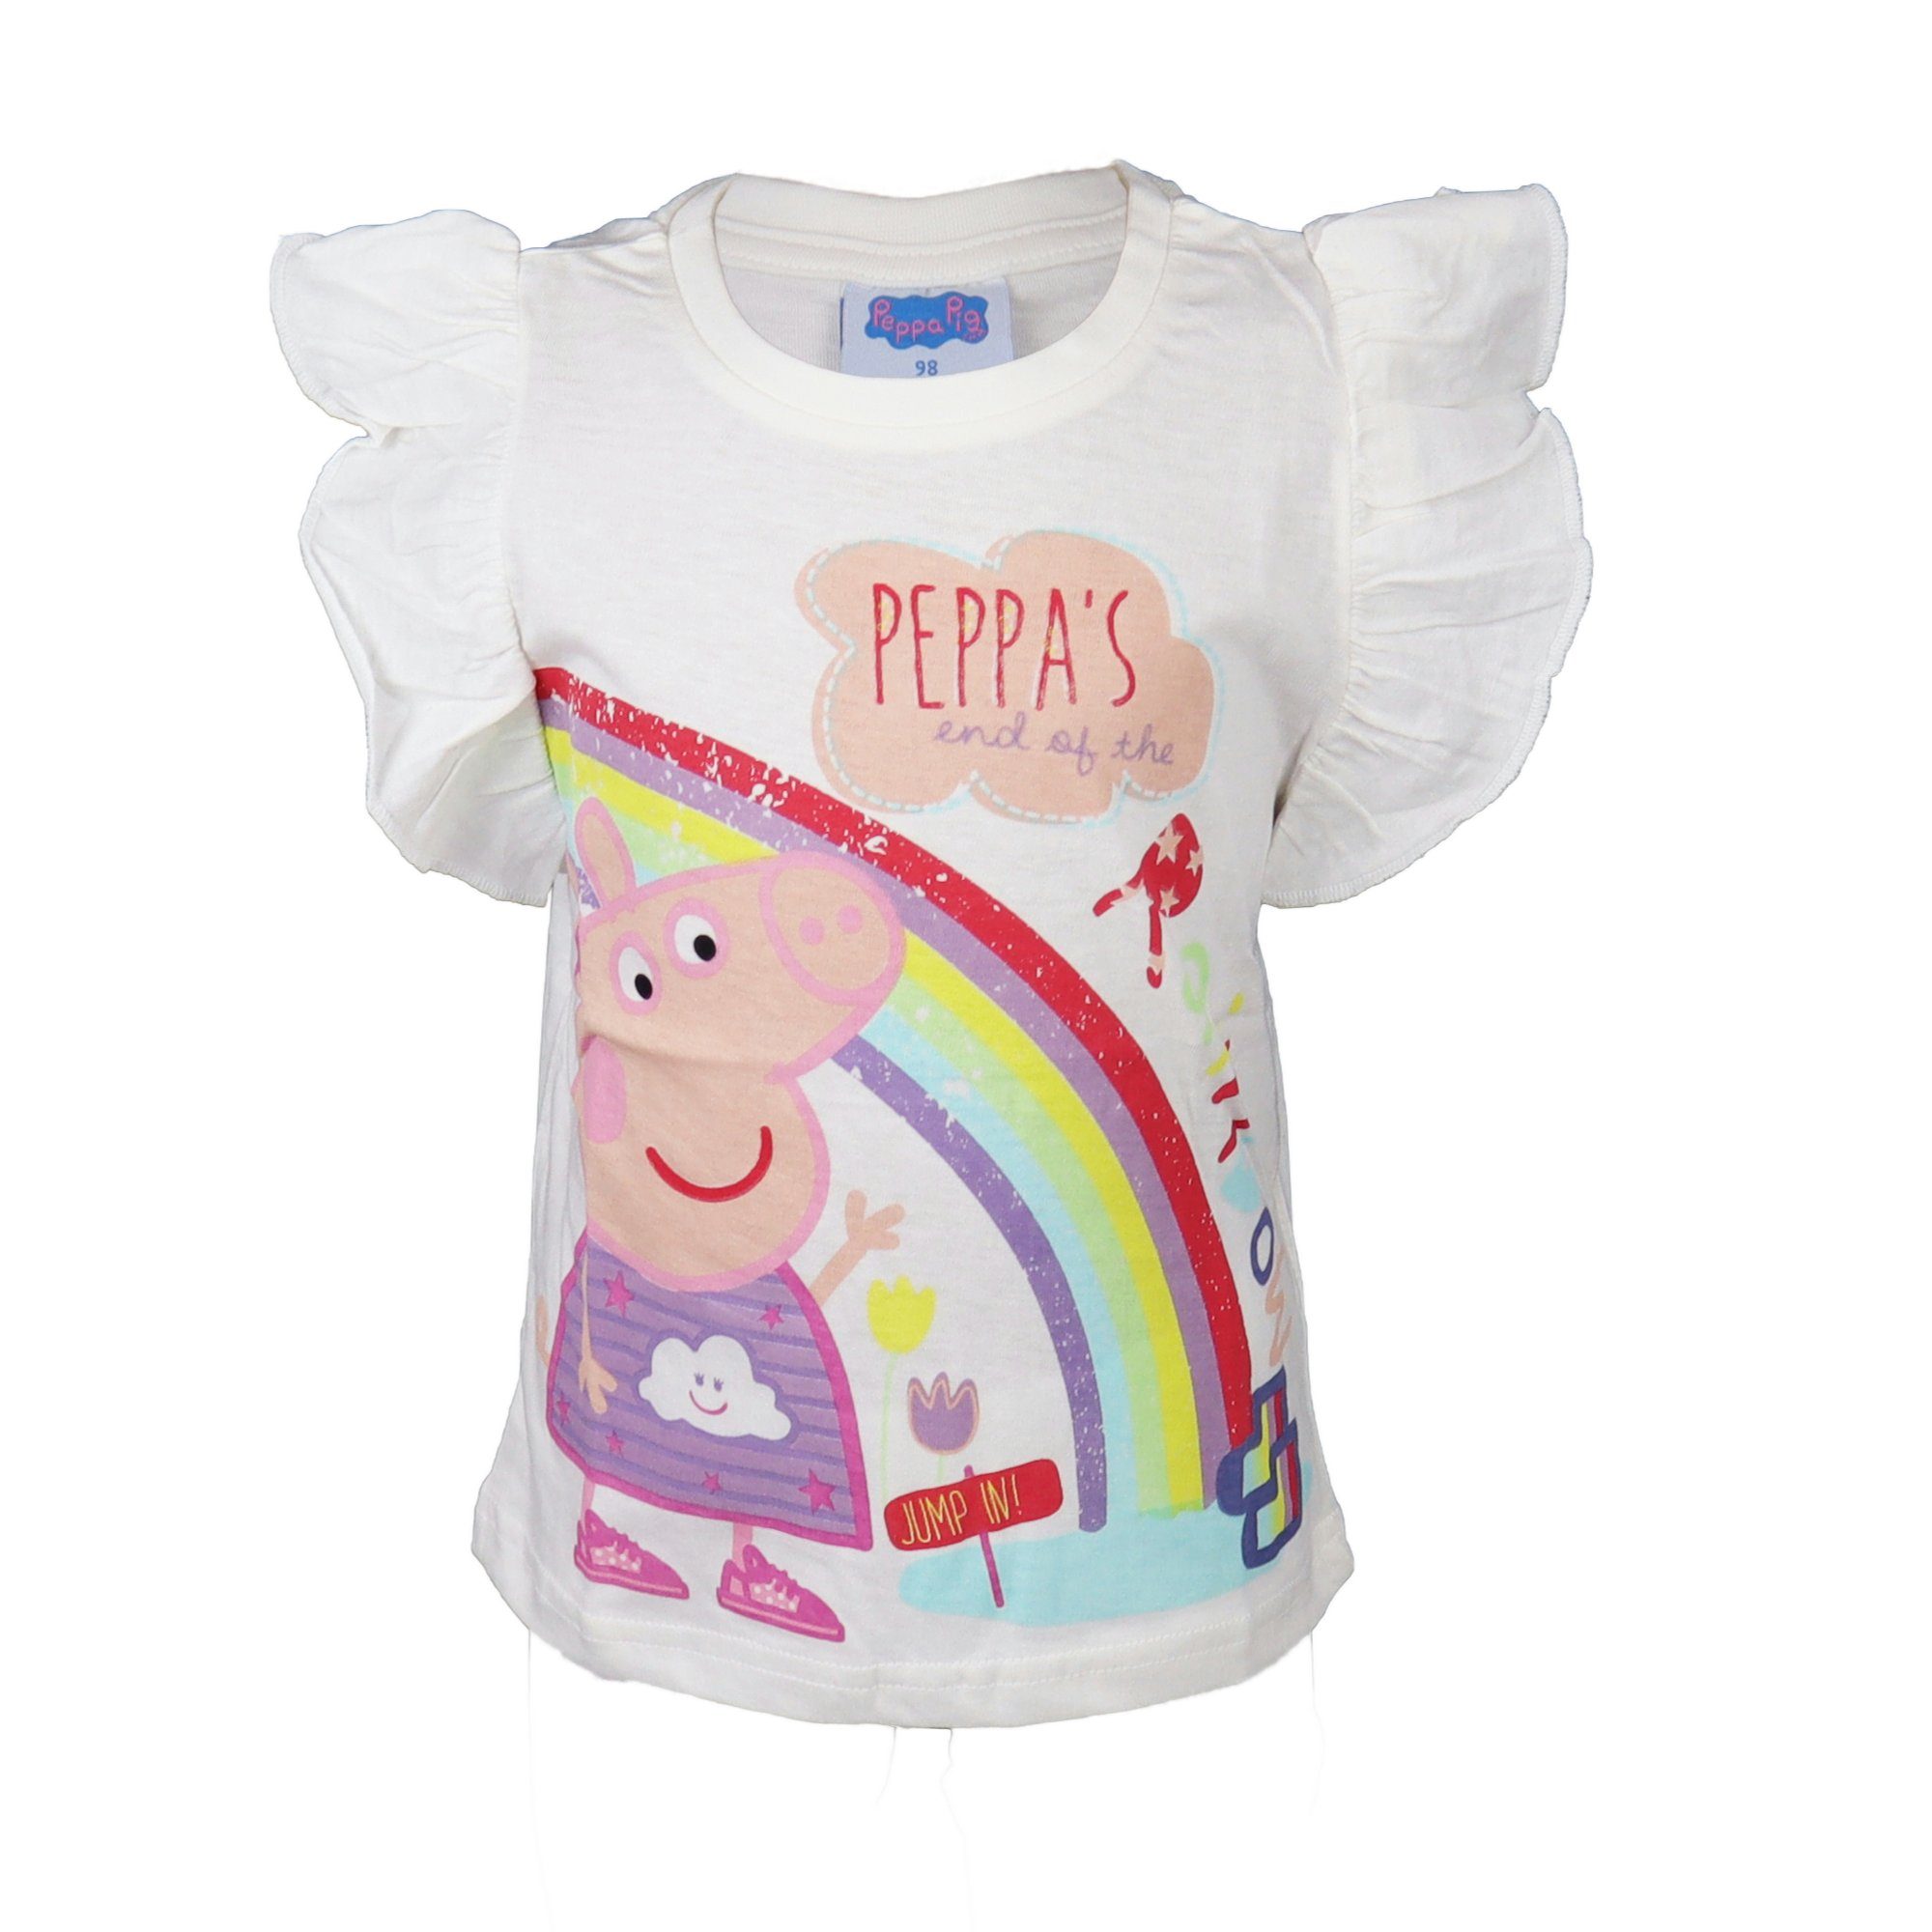 bis T-Shirt Baumwolle 92 Weiß Pig Peppa 100% 116, Kinder Shirt Gr. Wutz